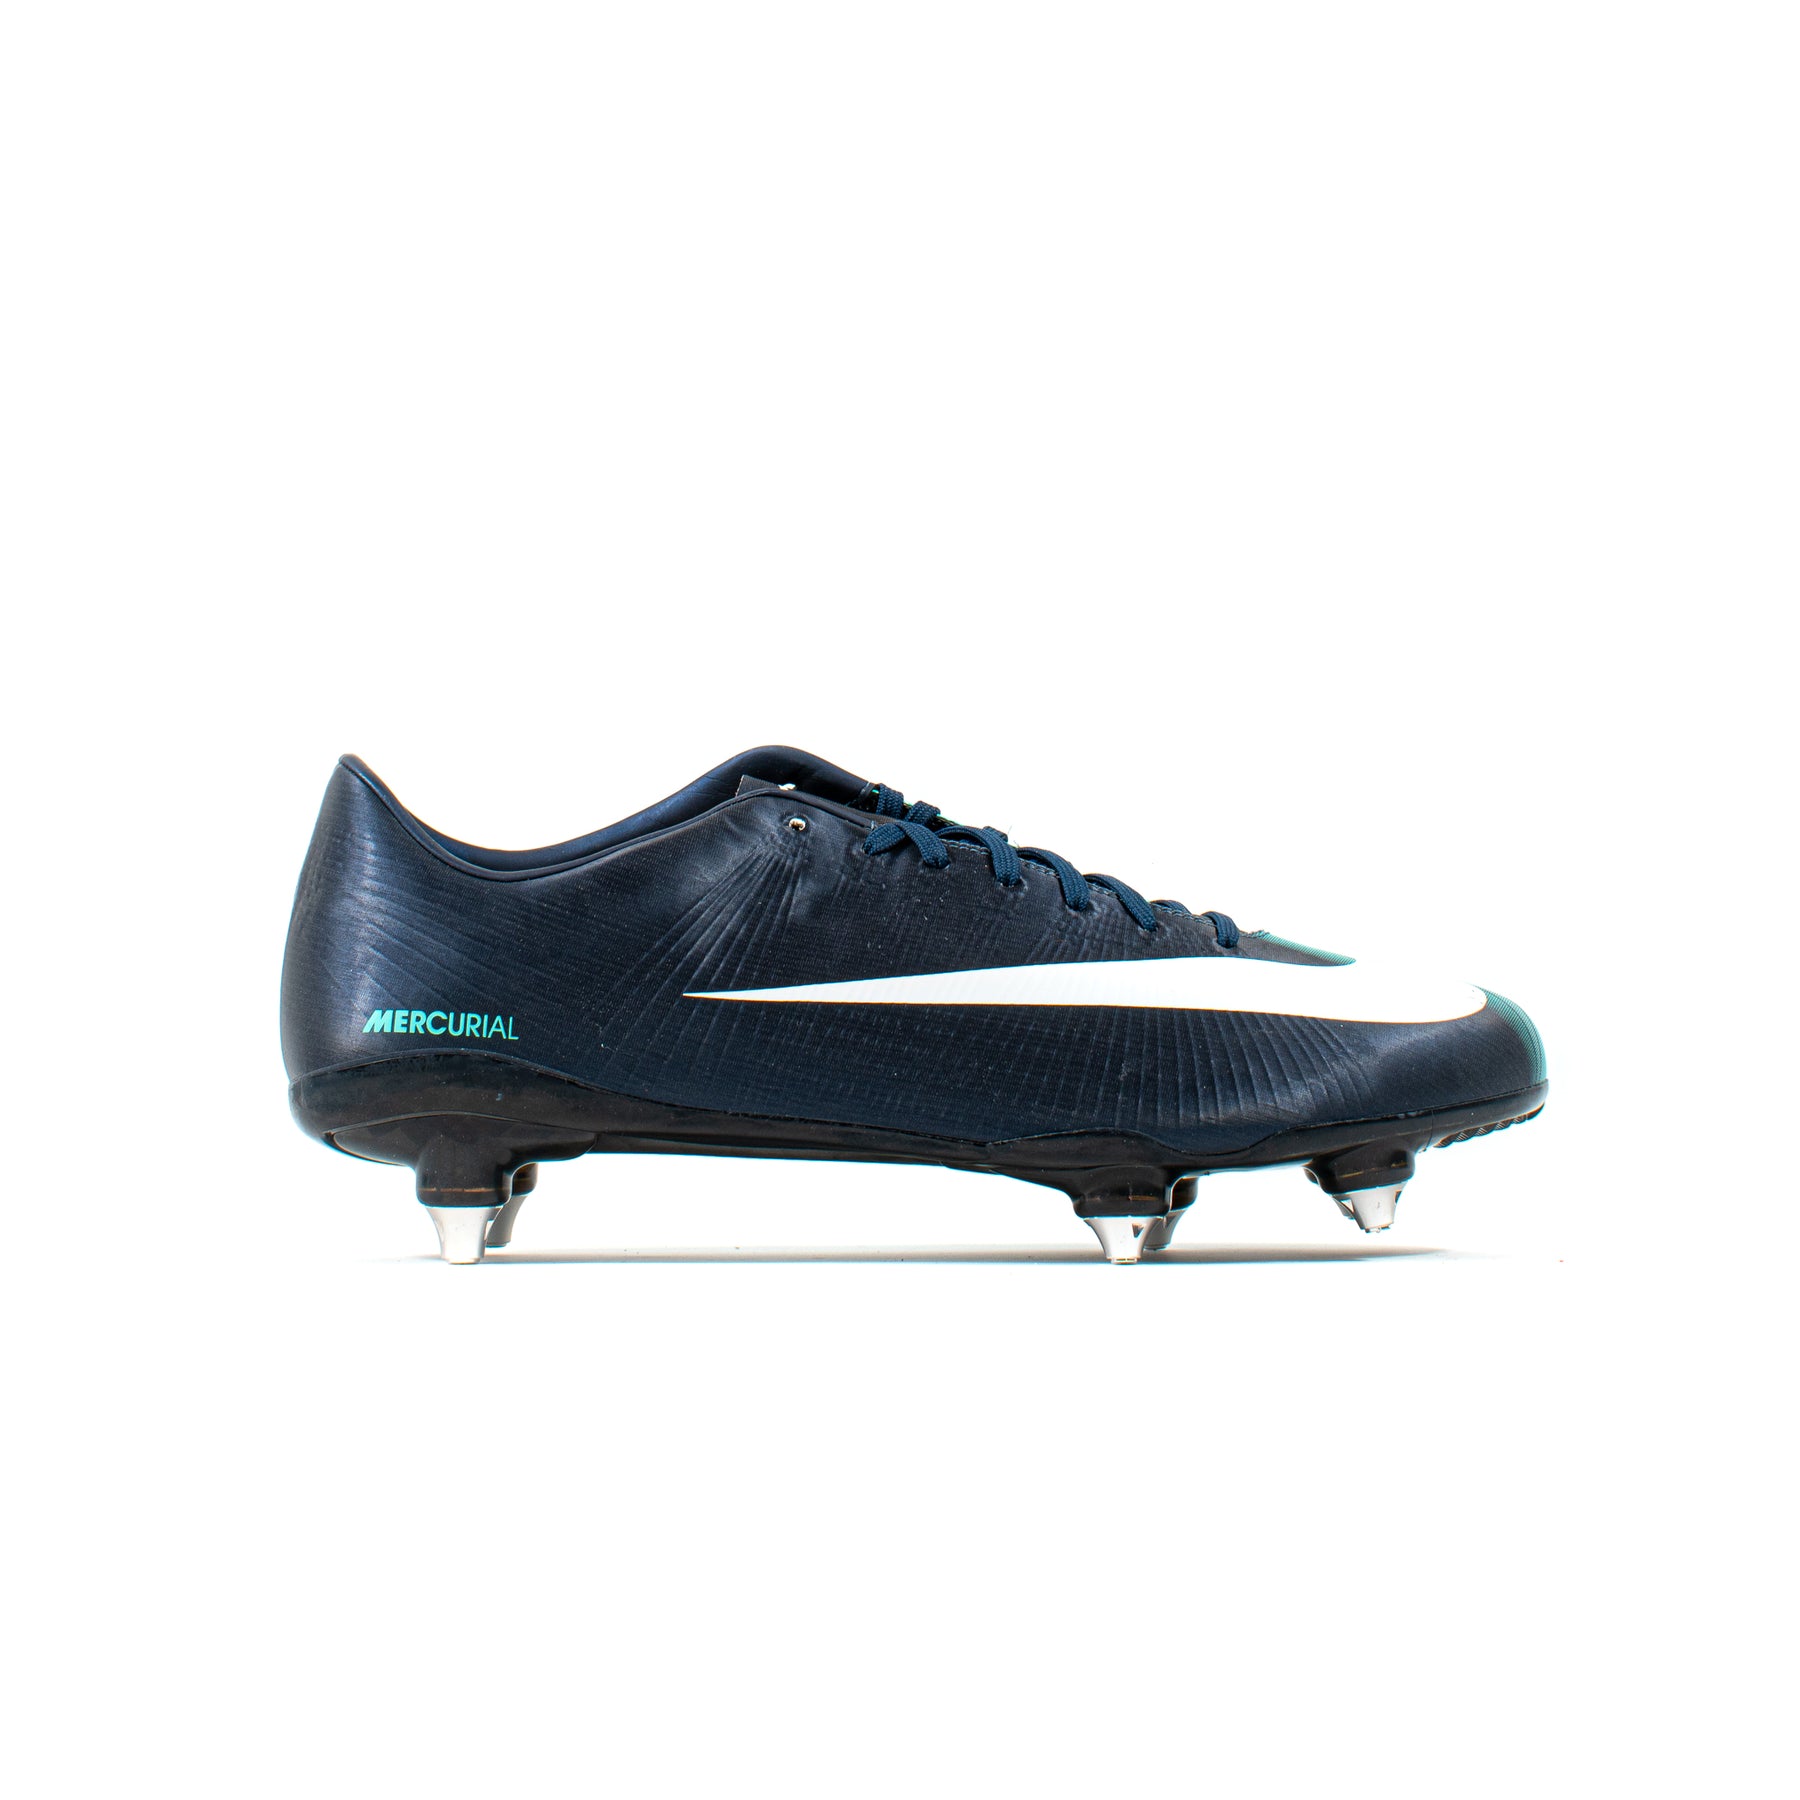 Vorming merk op Kwadrant Nike Mercurial Vapor Superfly II Obsidian SG – Classic Soccer Cleats